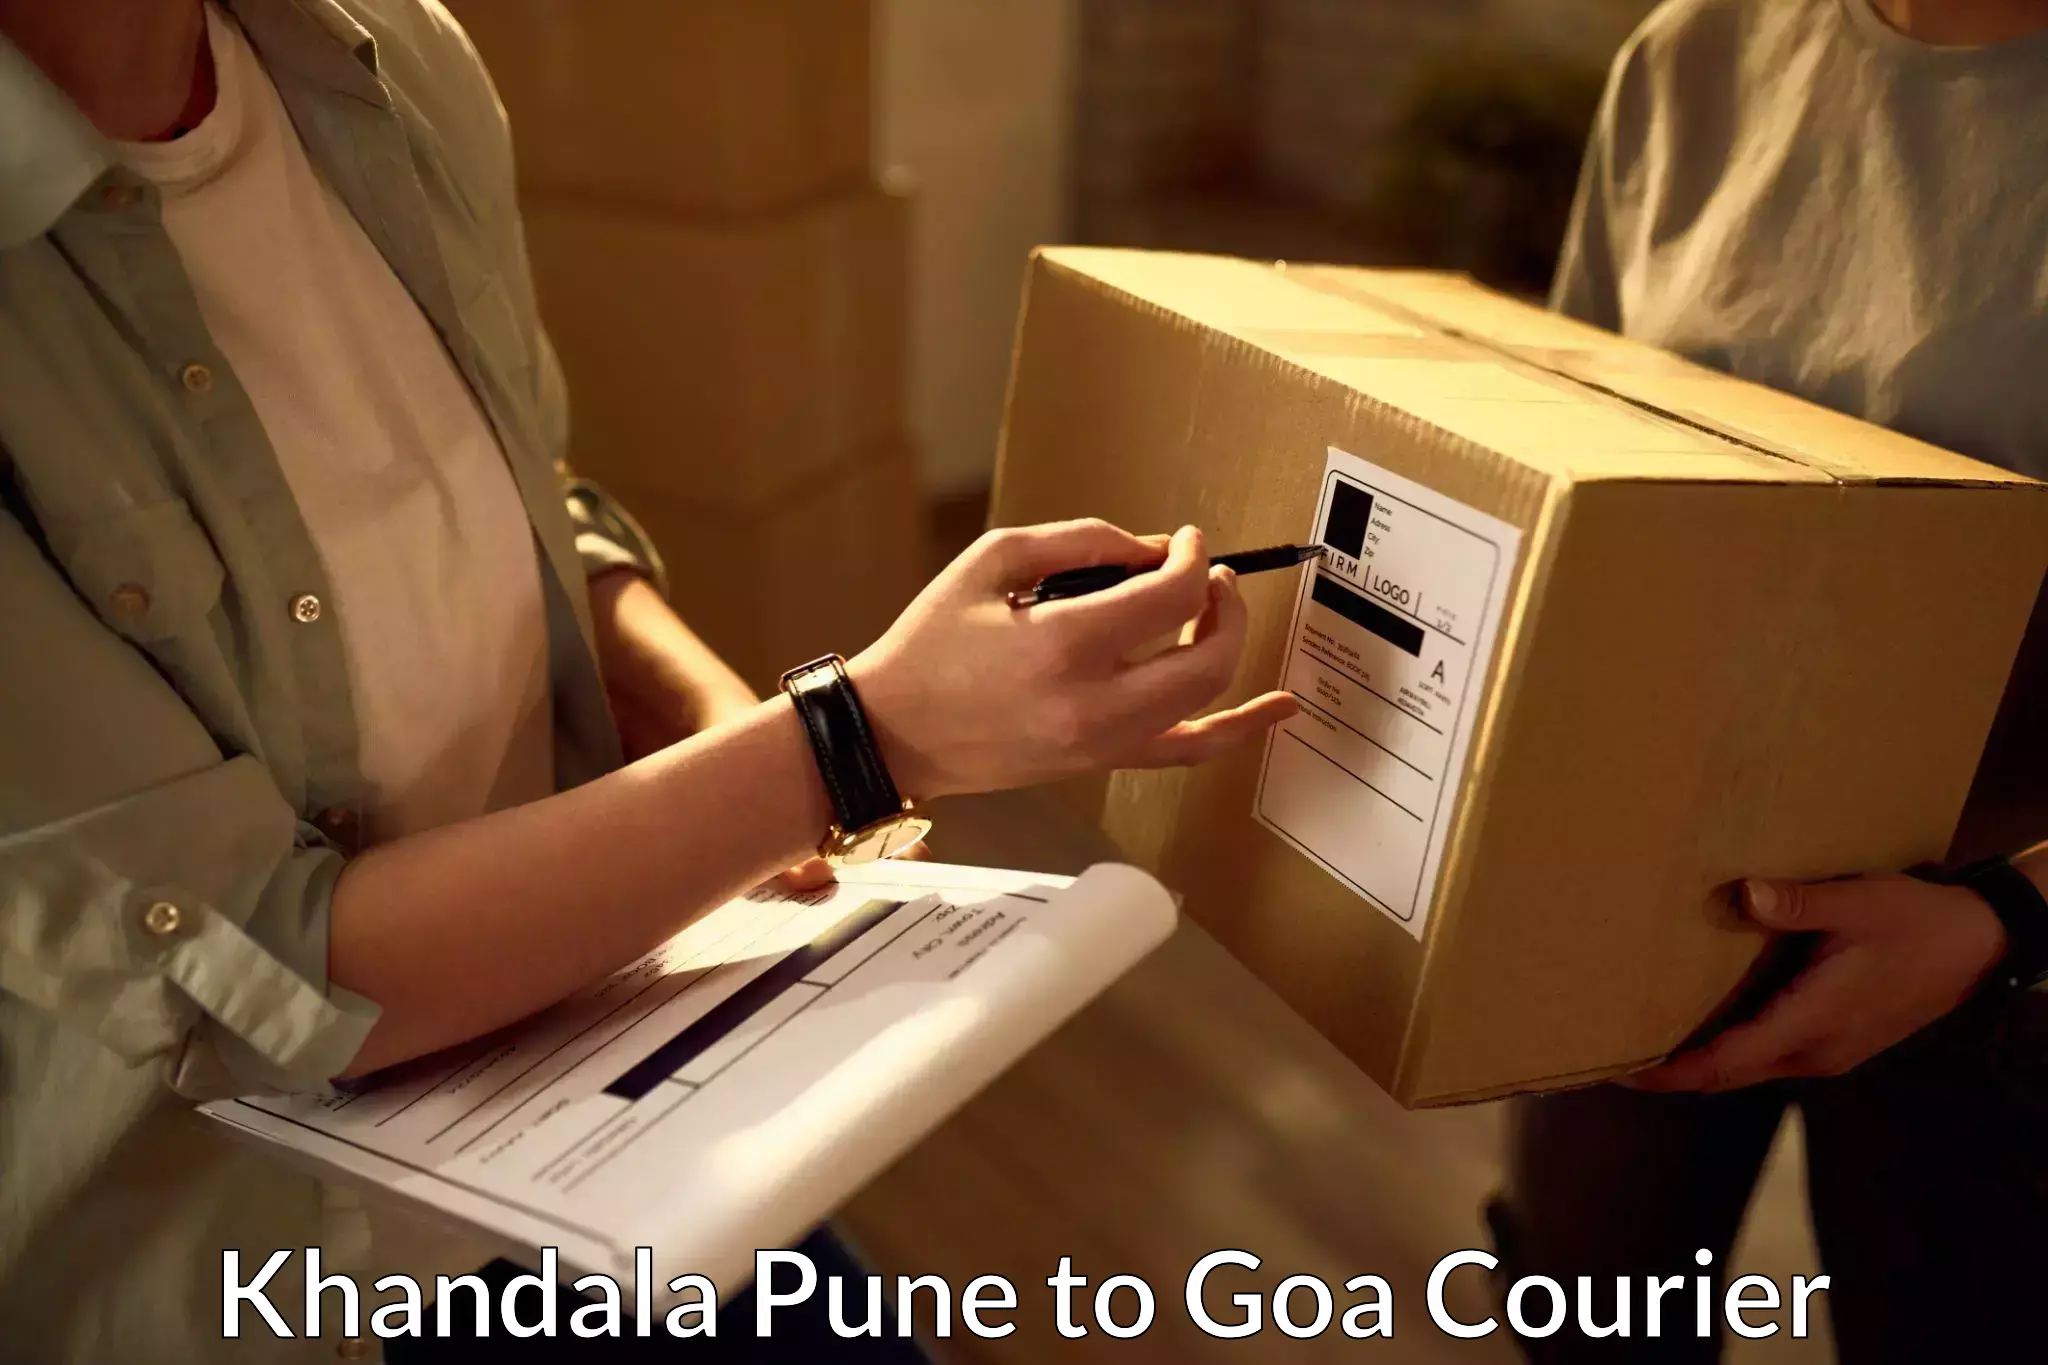 Advanced shipping technology Khandala Pune to Panaji